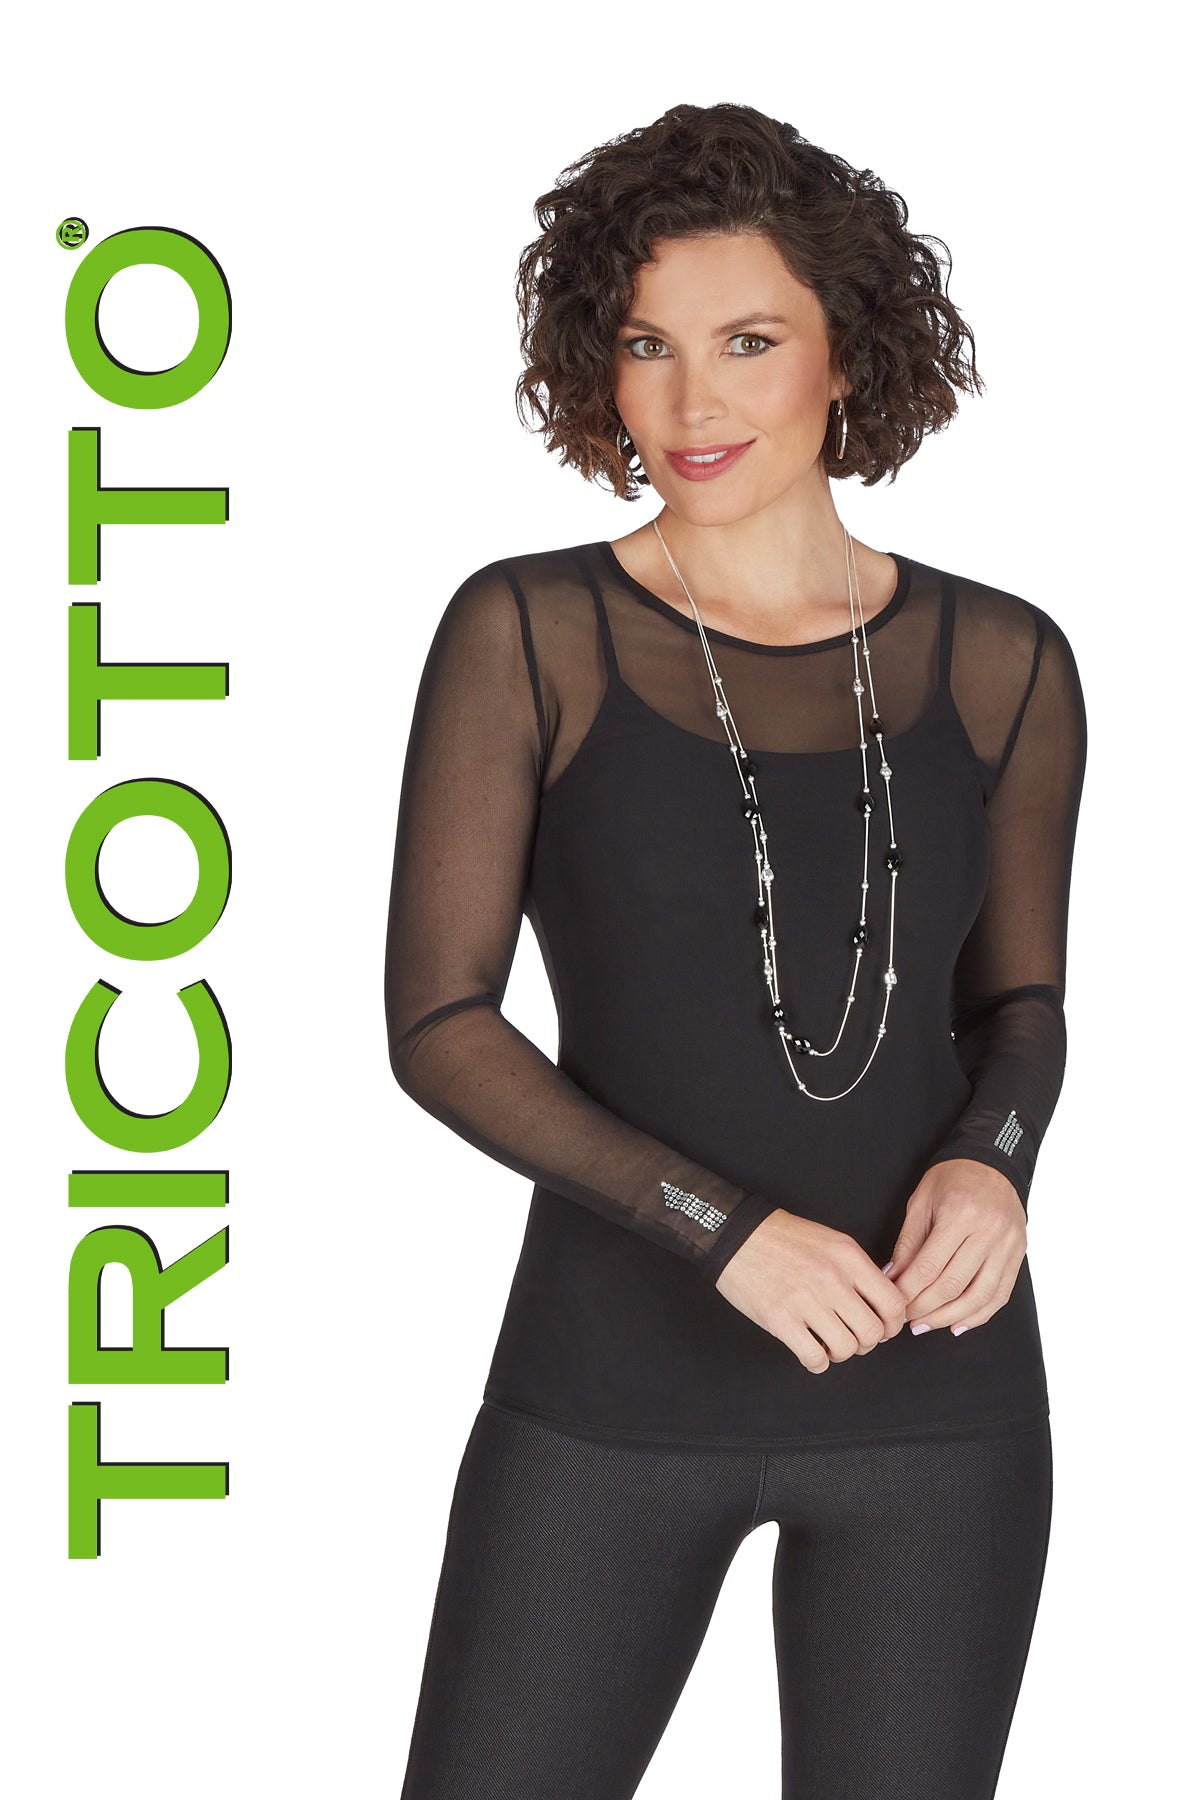 Tricotto Black Cover-up-Tricotto Fashion Montreal-Tricotto Fashion Quebec-Tricotto Online Shop